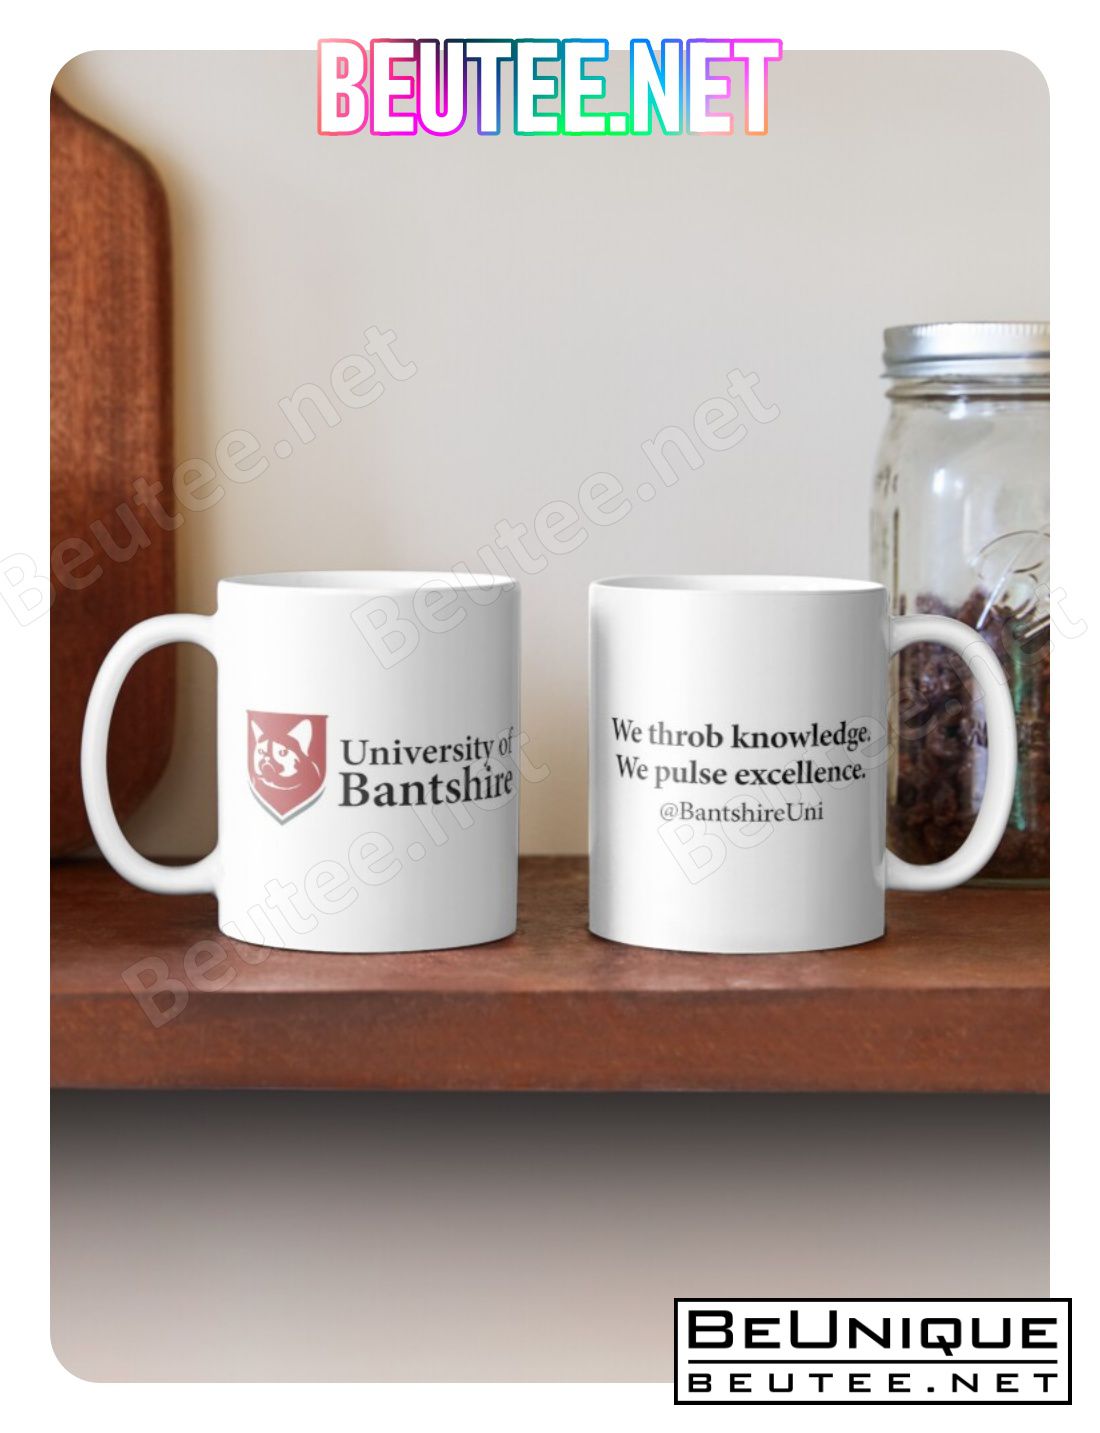 The University Of Bantshire Coffee Mug